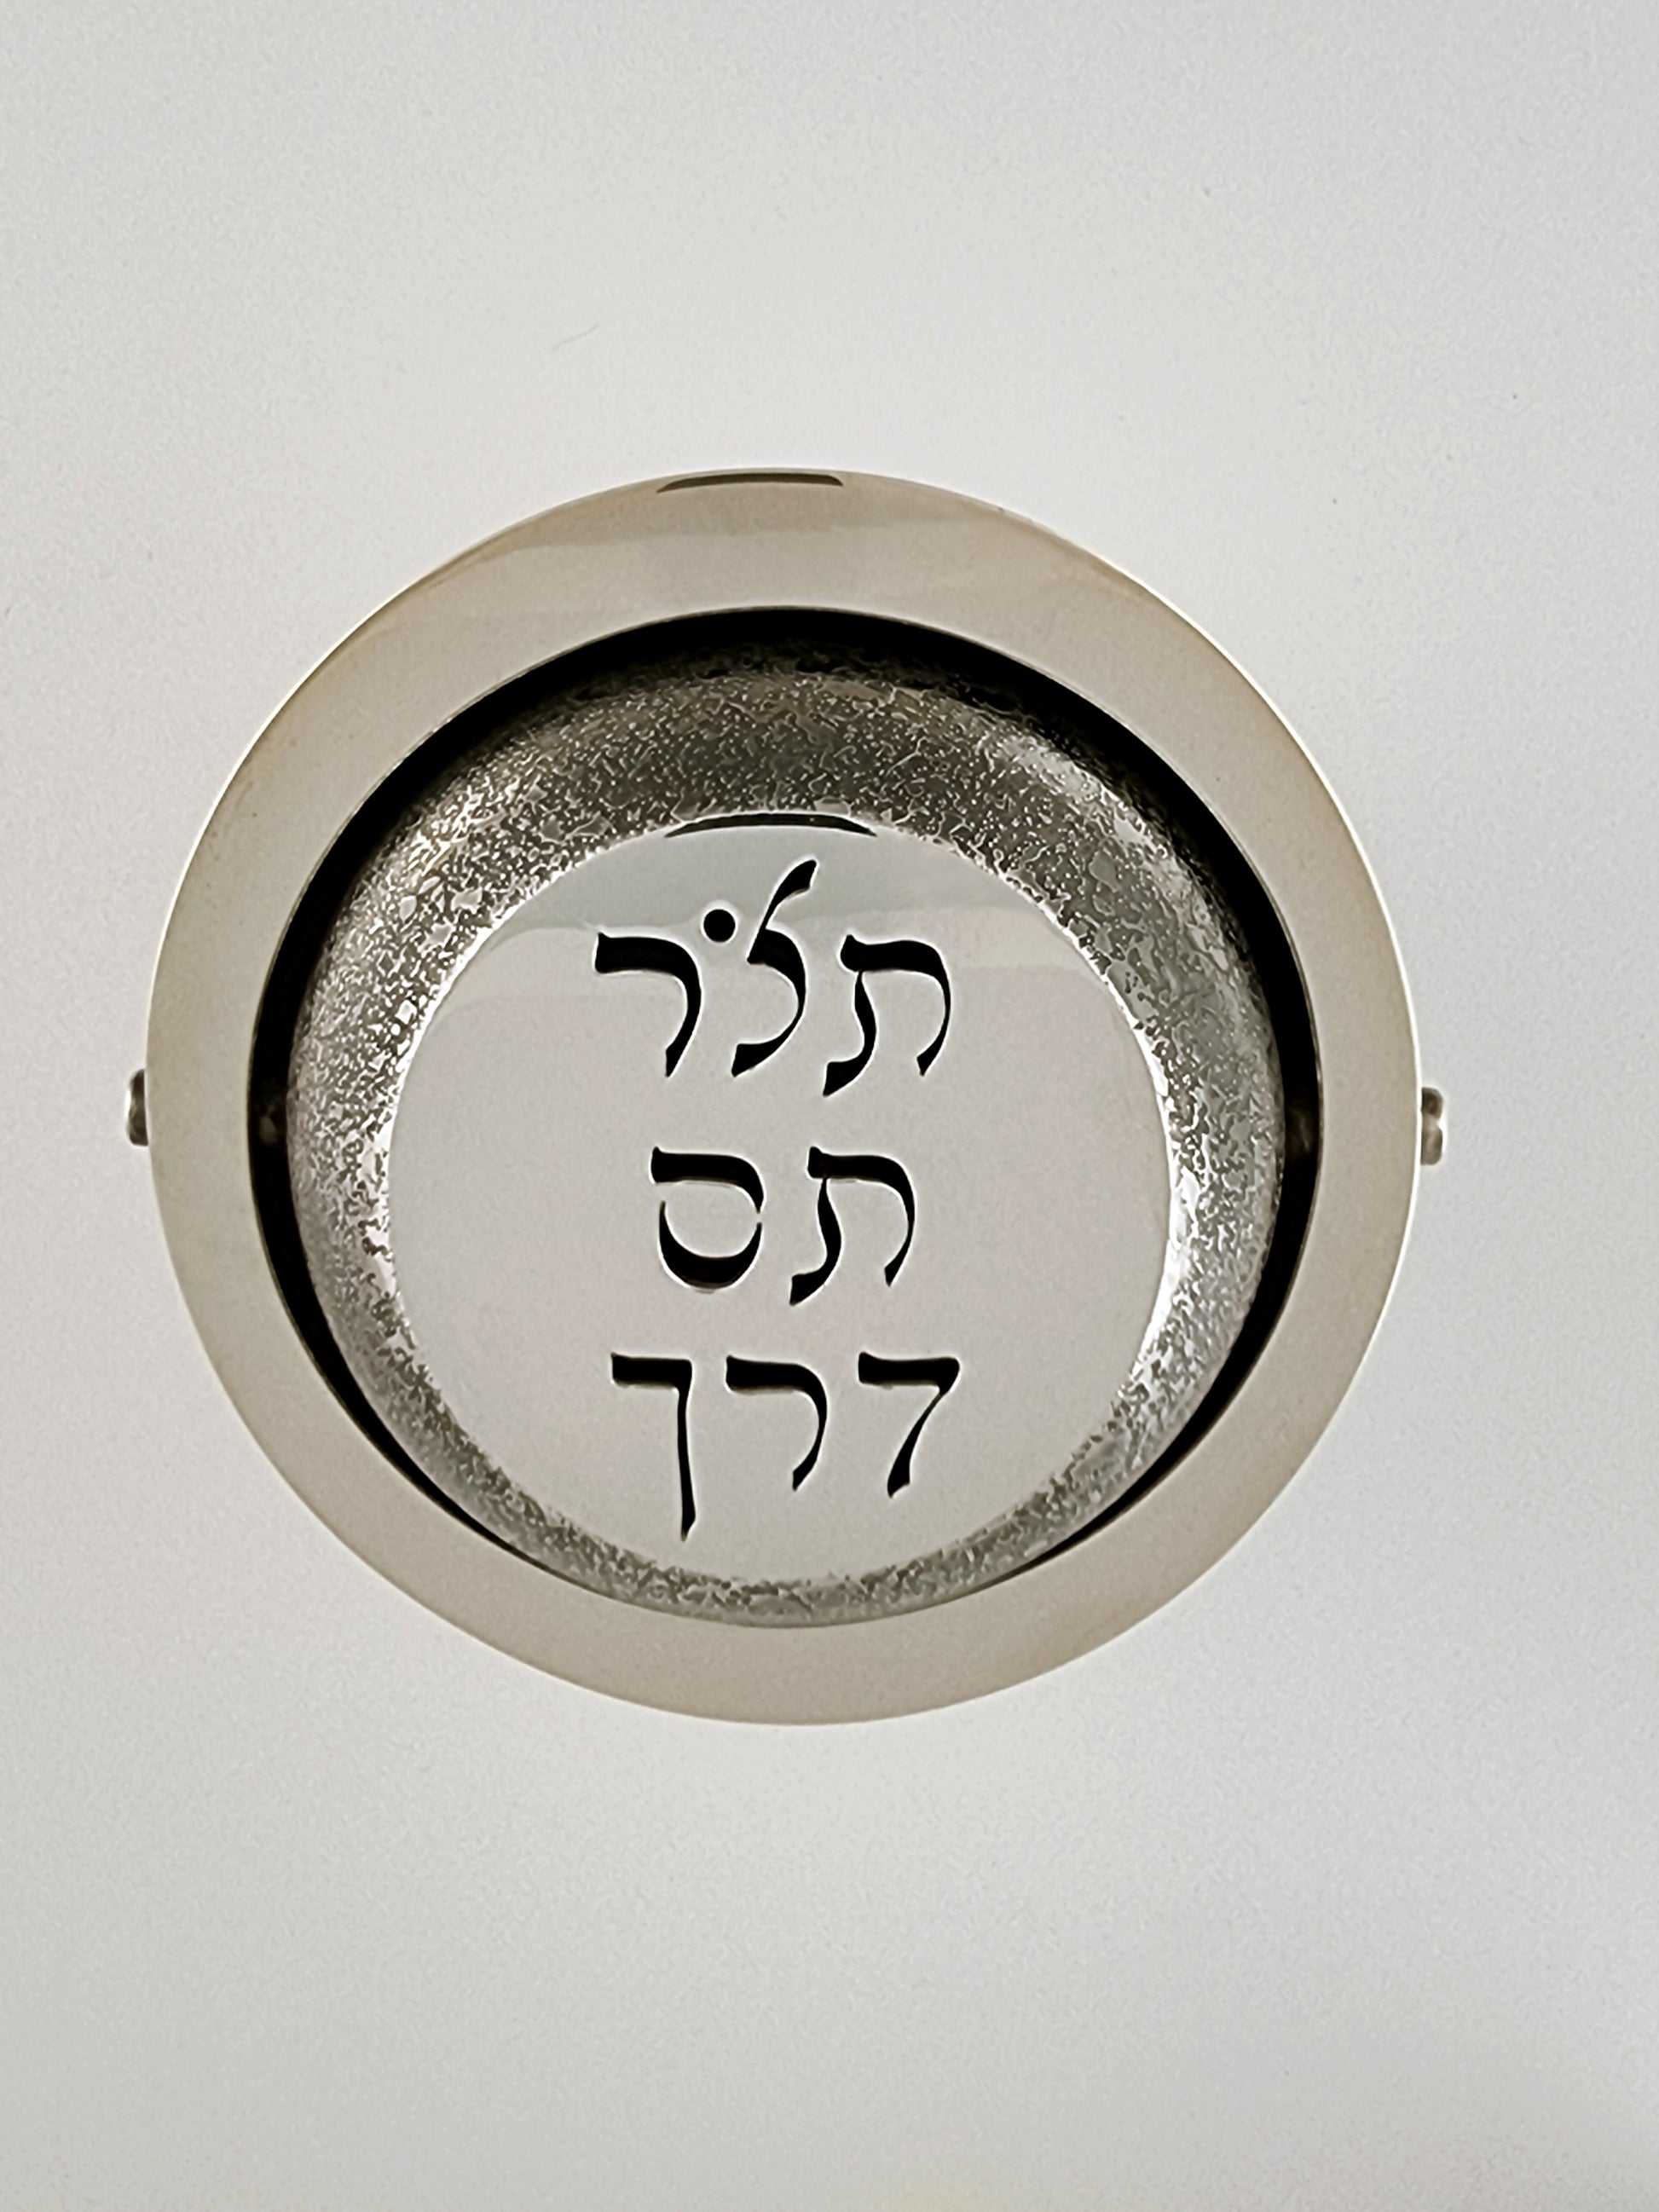 Flat polished side of the ball on the top of Ezekiel Tzedakah Box.